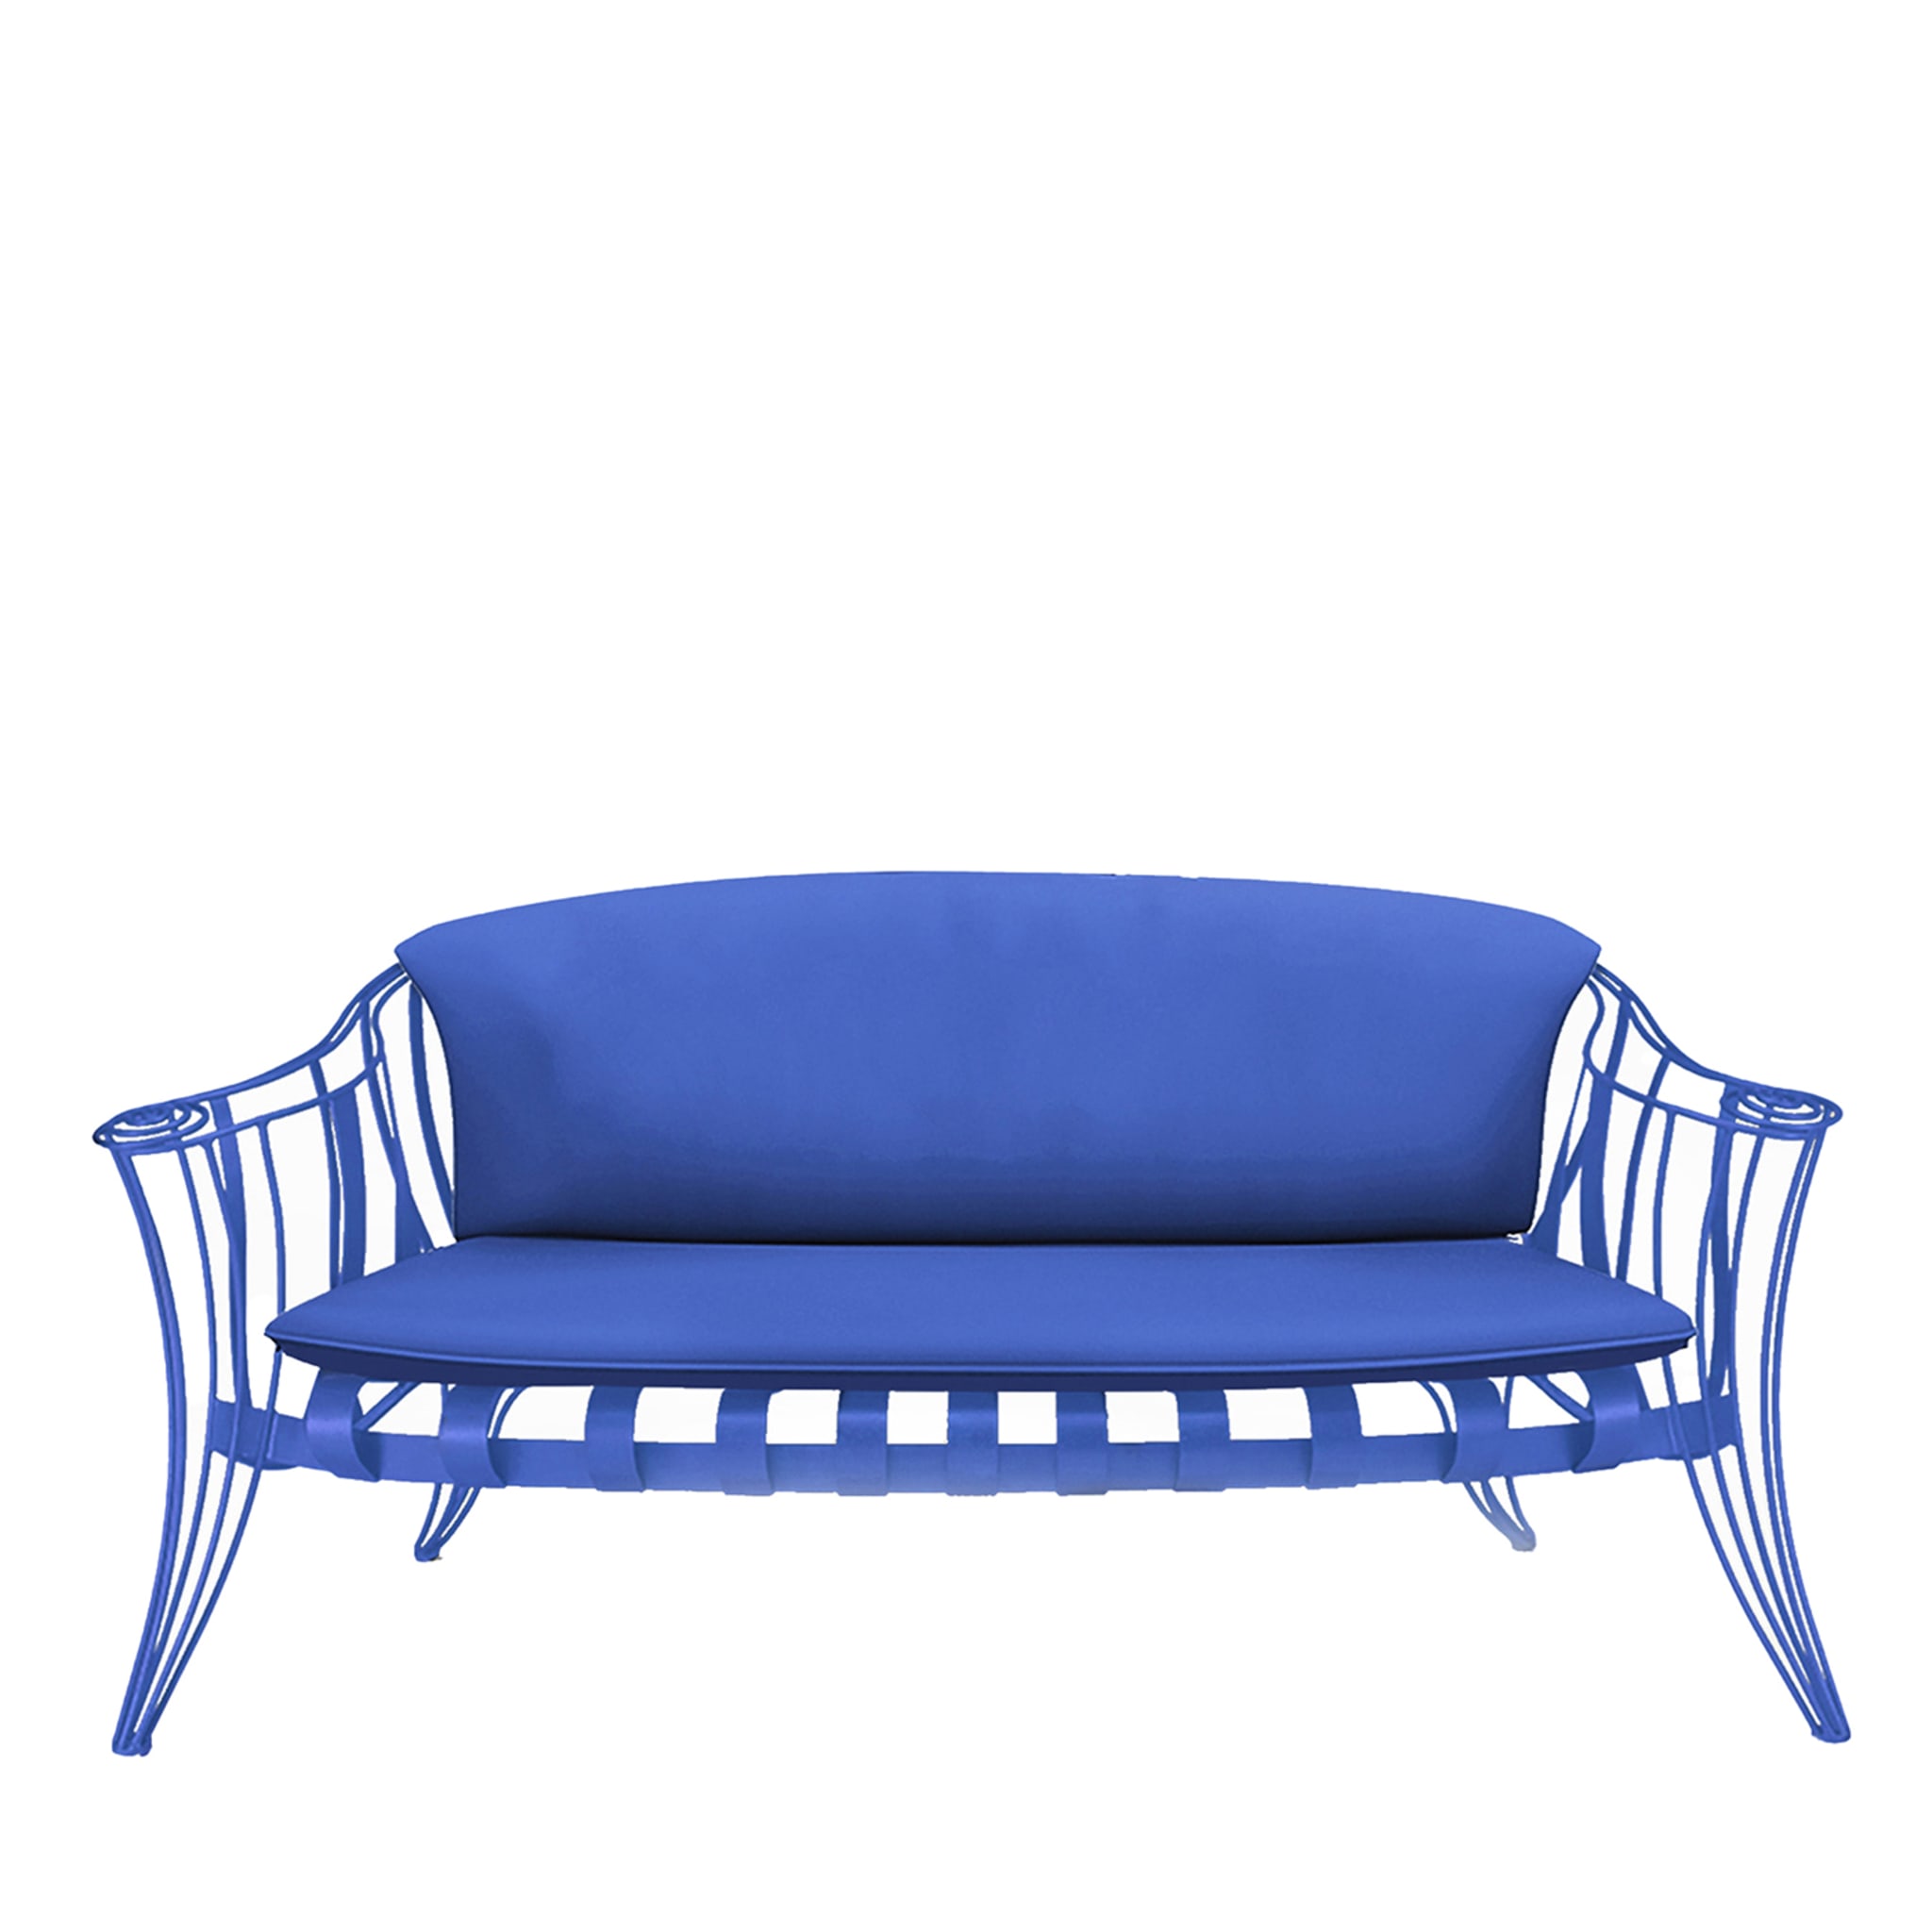 Opus Garden Blue Sofa by Carlo Rampazzi - Main view